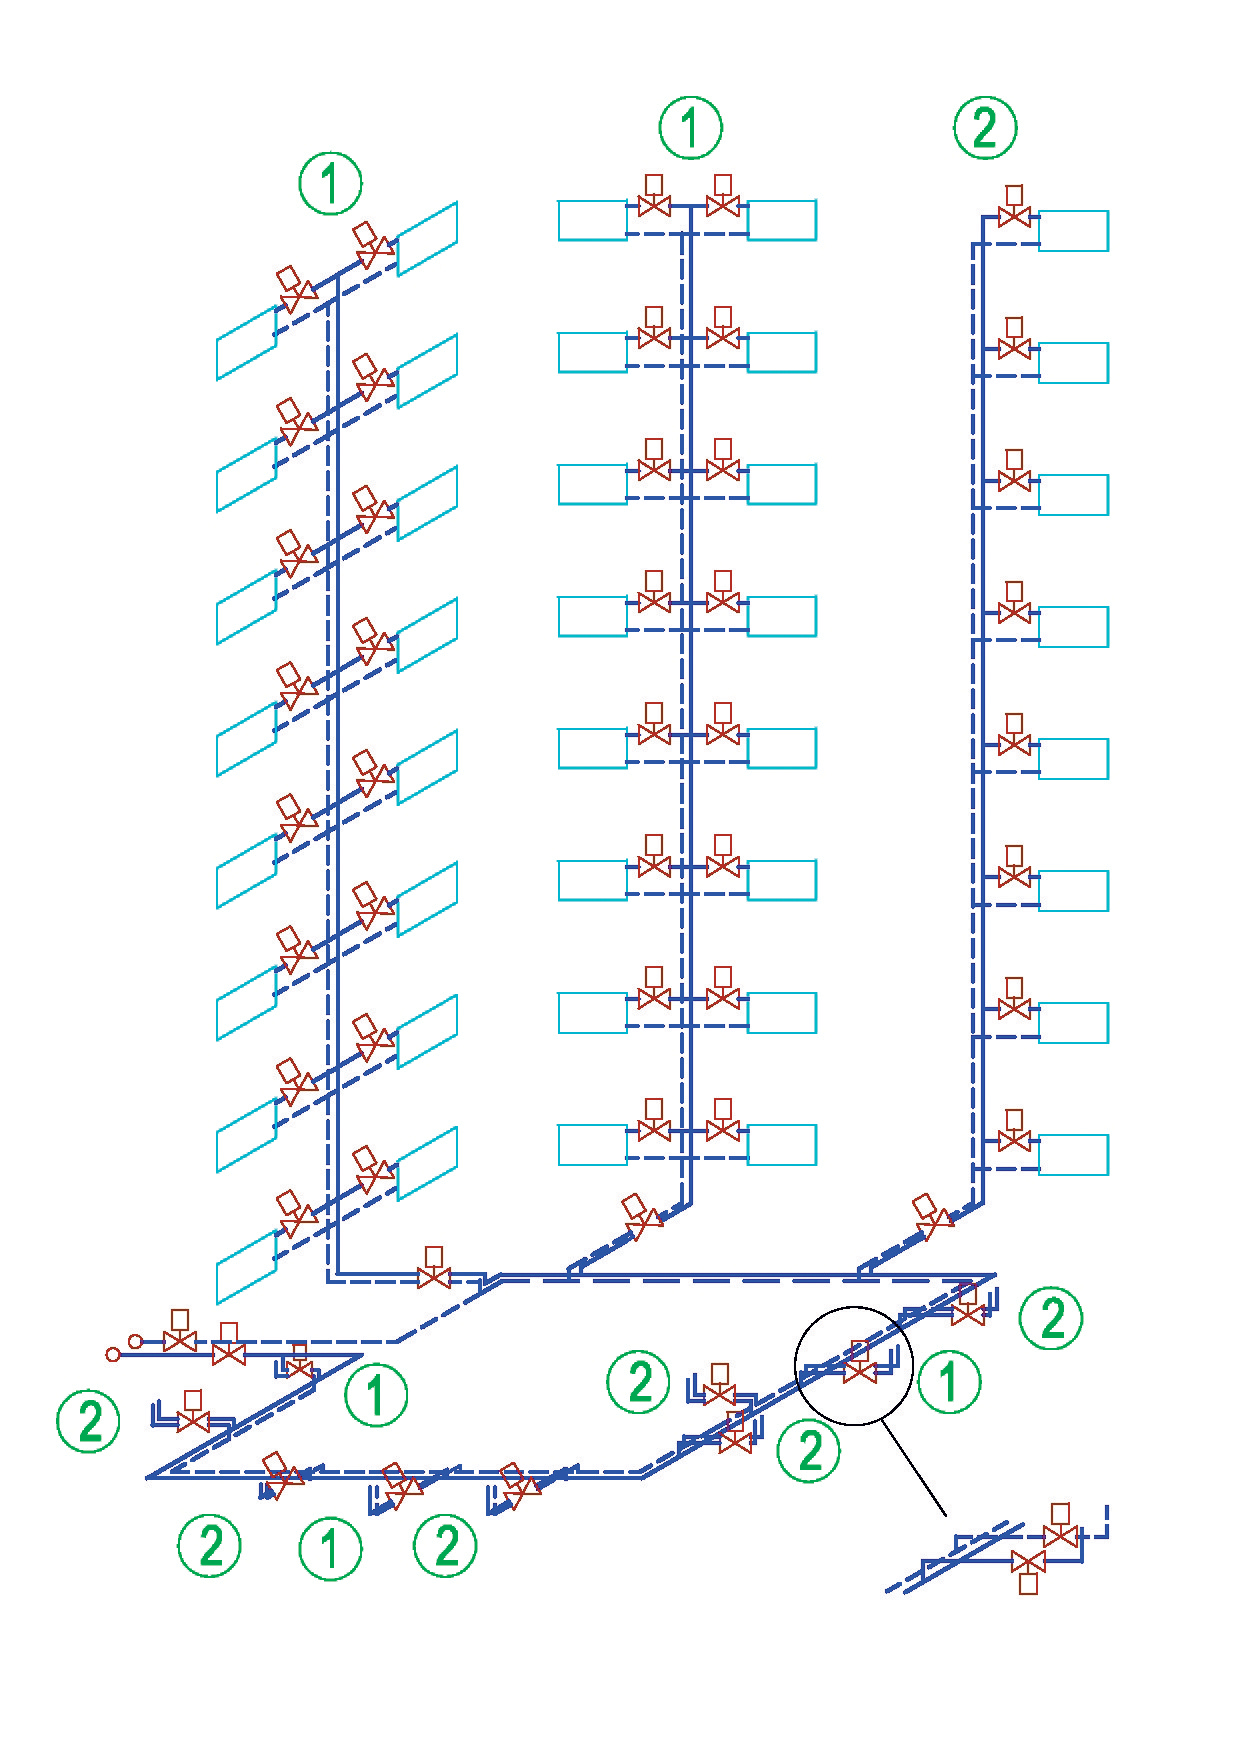 Obr. 1: Model teplovodnej vykurovacej sústavy s vyznačeným typom stúpacích potrubí a s označeným miestom osadenia regulačných armatúr;1 – stúpacie potrubie s obojstranným pripojením vykurovacích telies, 2 – stúpacie potrubie s jednostranným pripojením vykurovacích telies